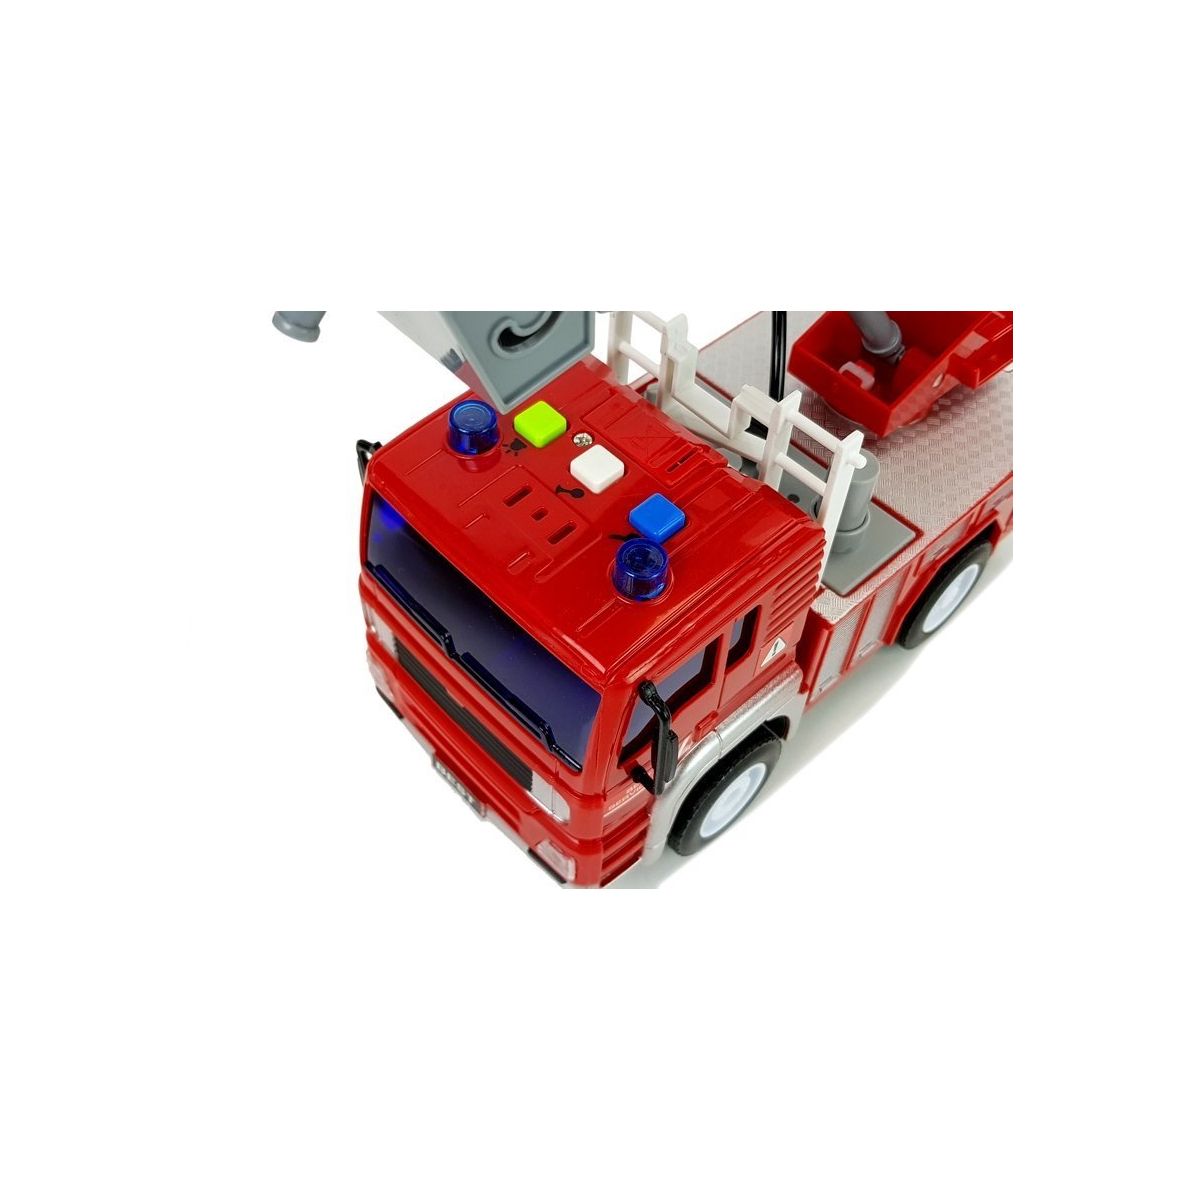 Samochód strażacki światło i dźwięk Lean (6985)